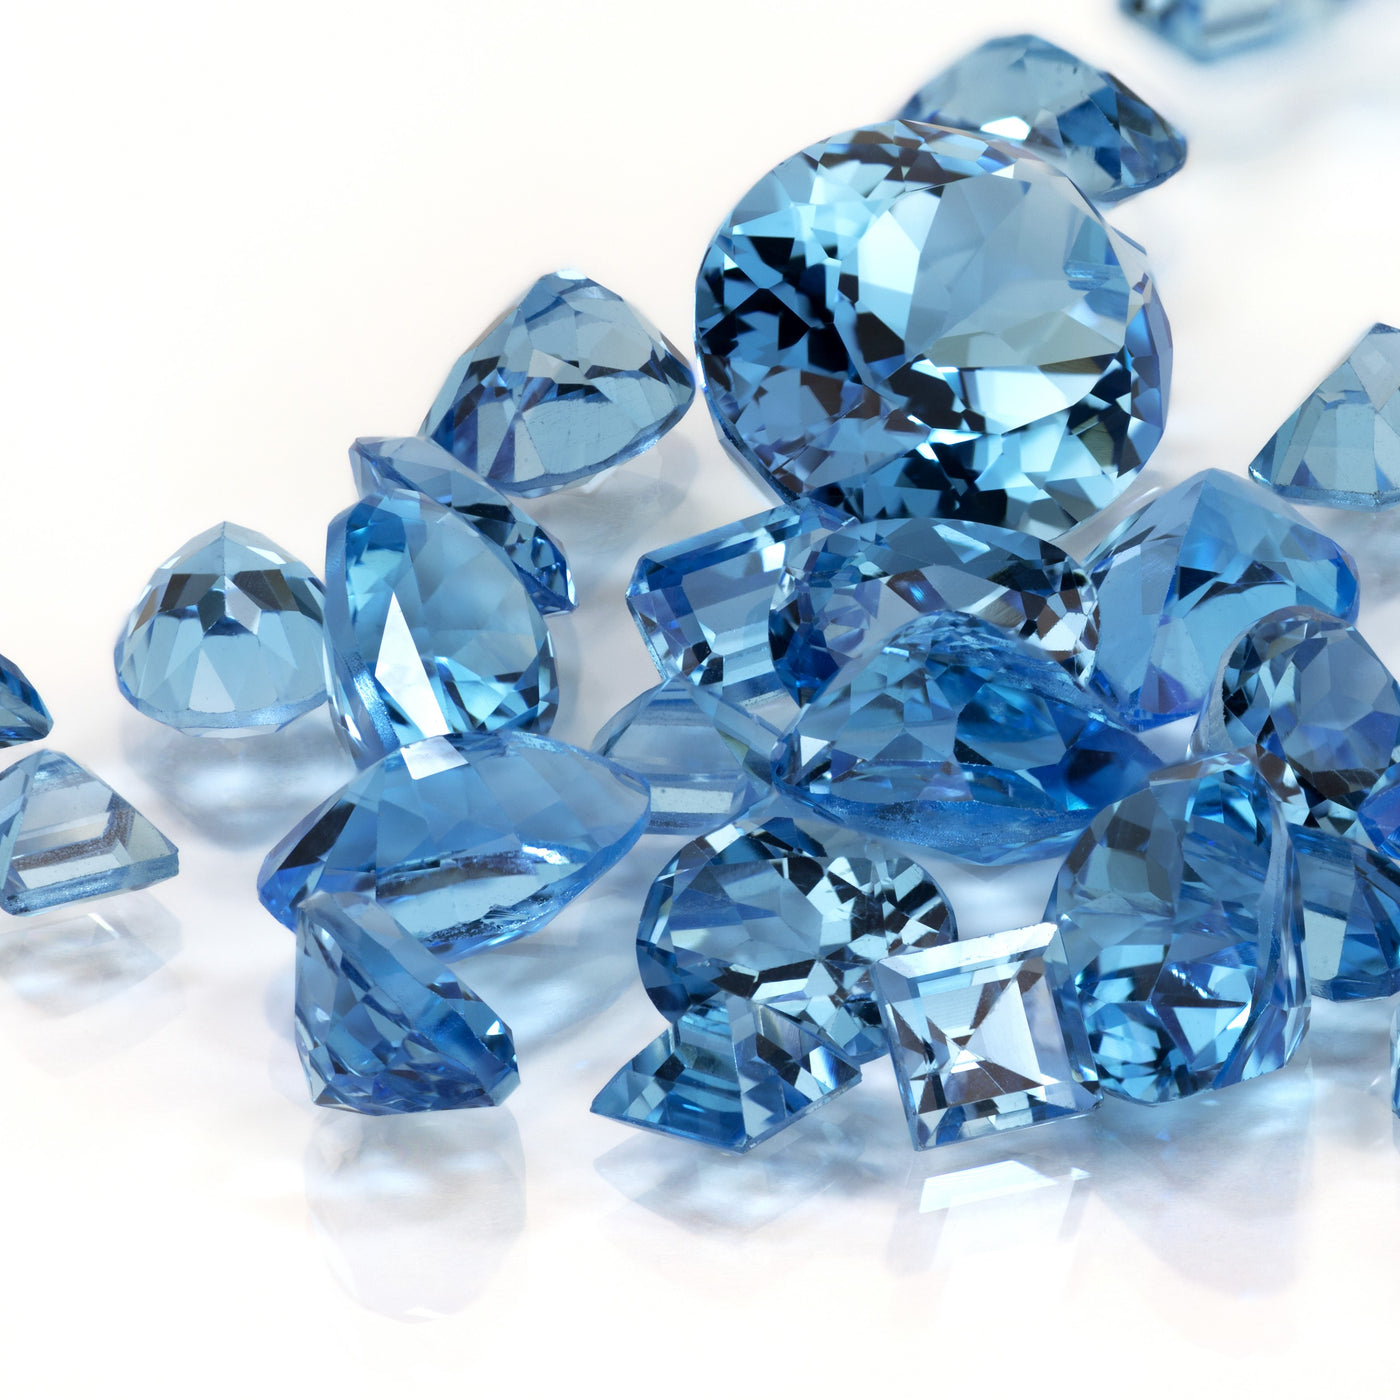 Buyer's Guide: Buying Aquamarine Jewelry